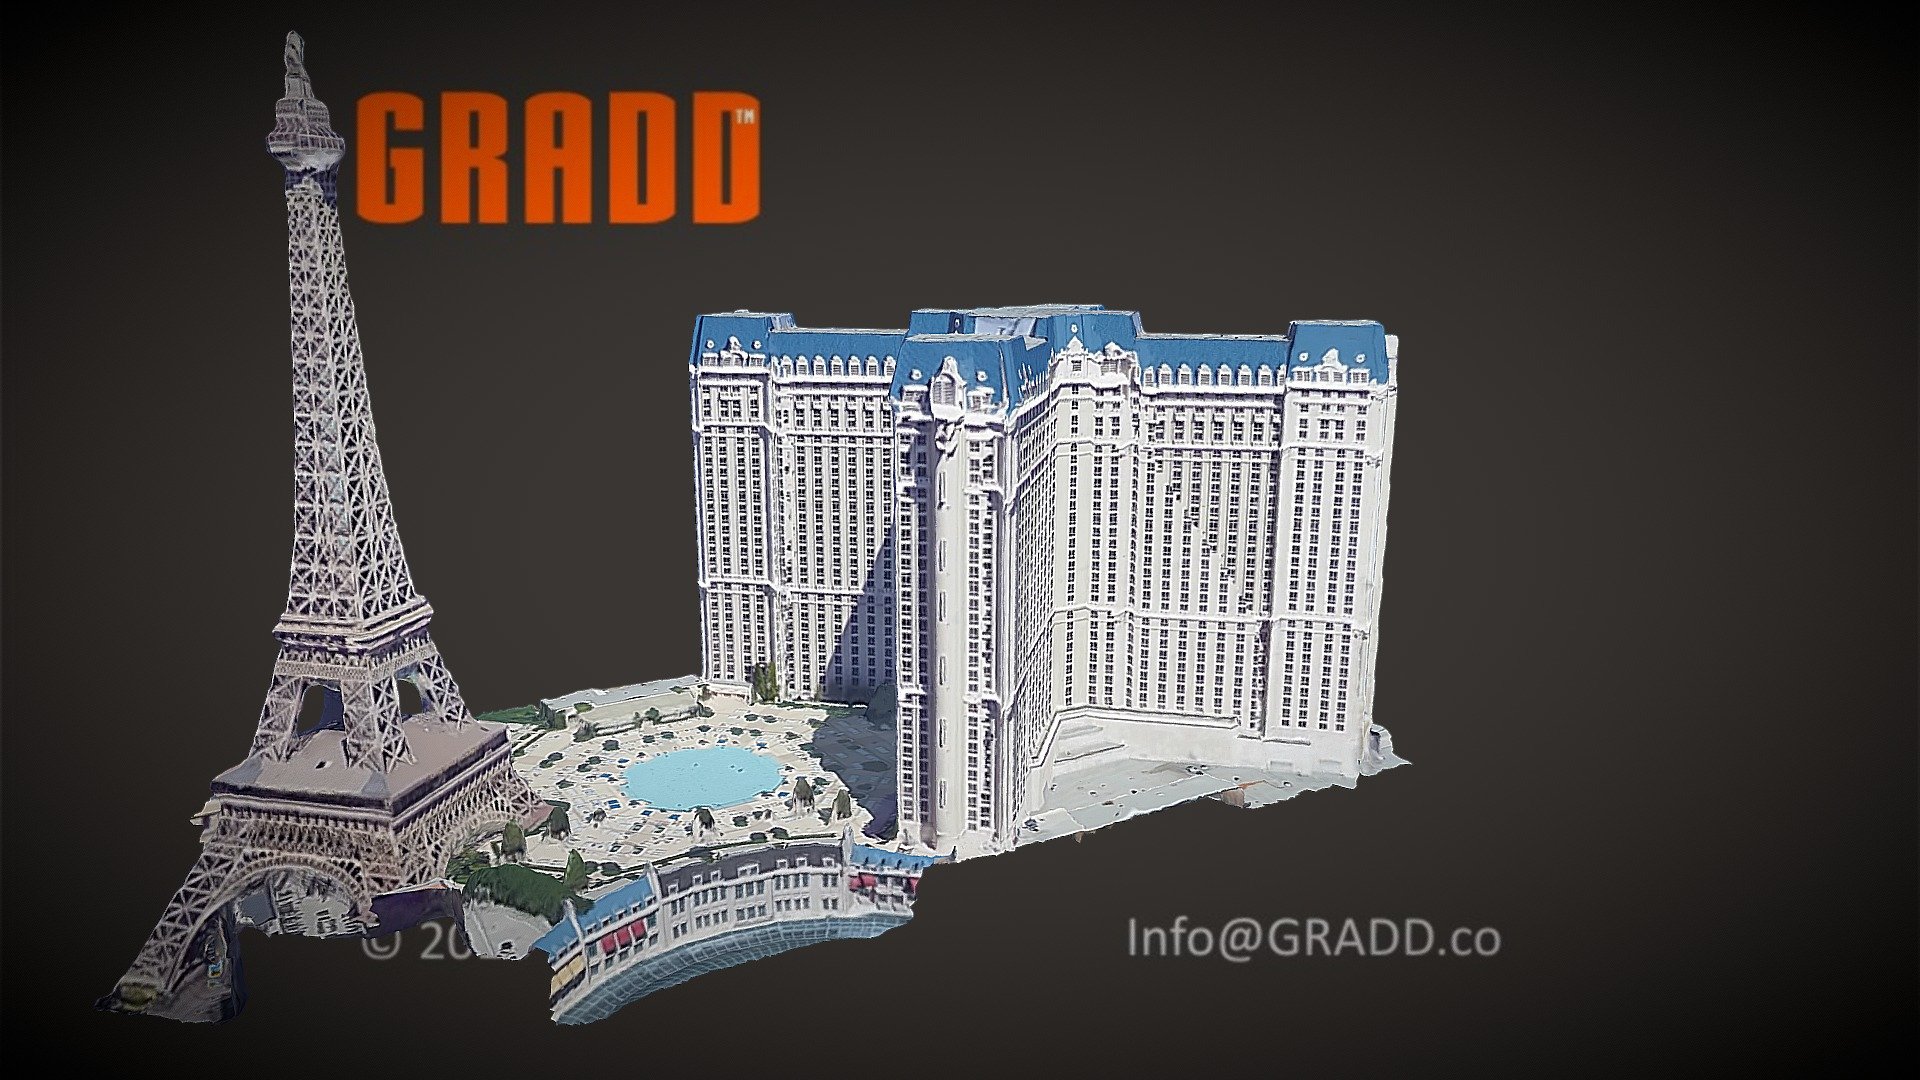 Paris Las Vegas Hotel & Casino - Semco Modern Seamless Surface